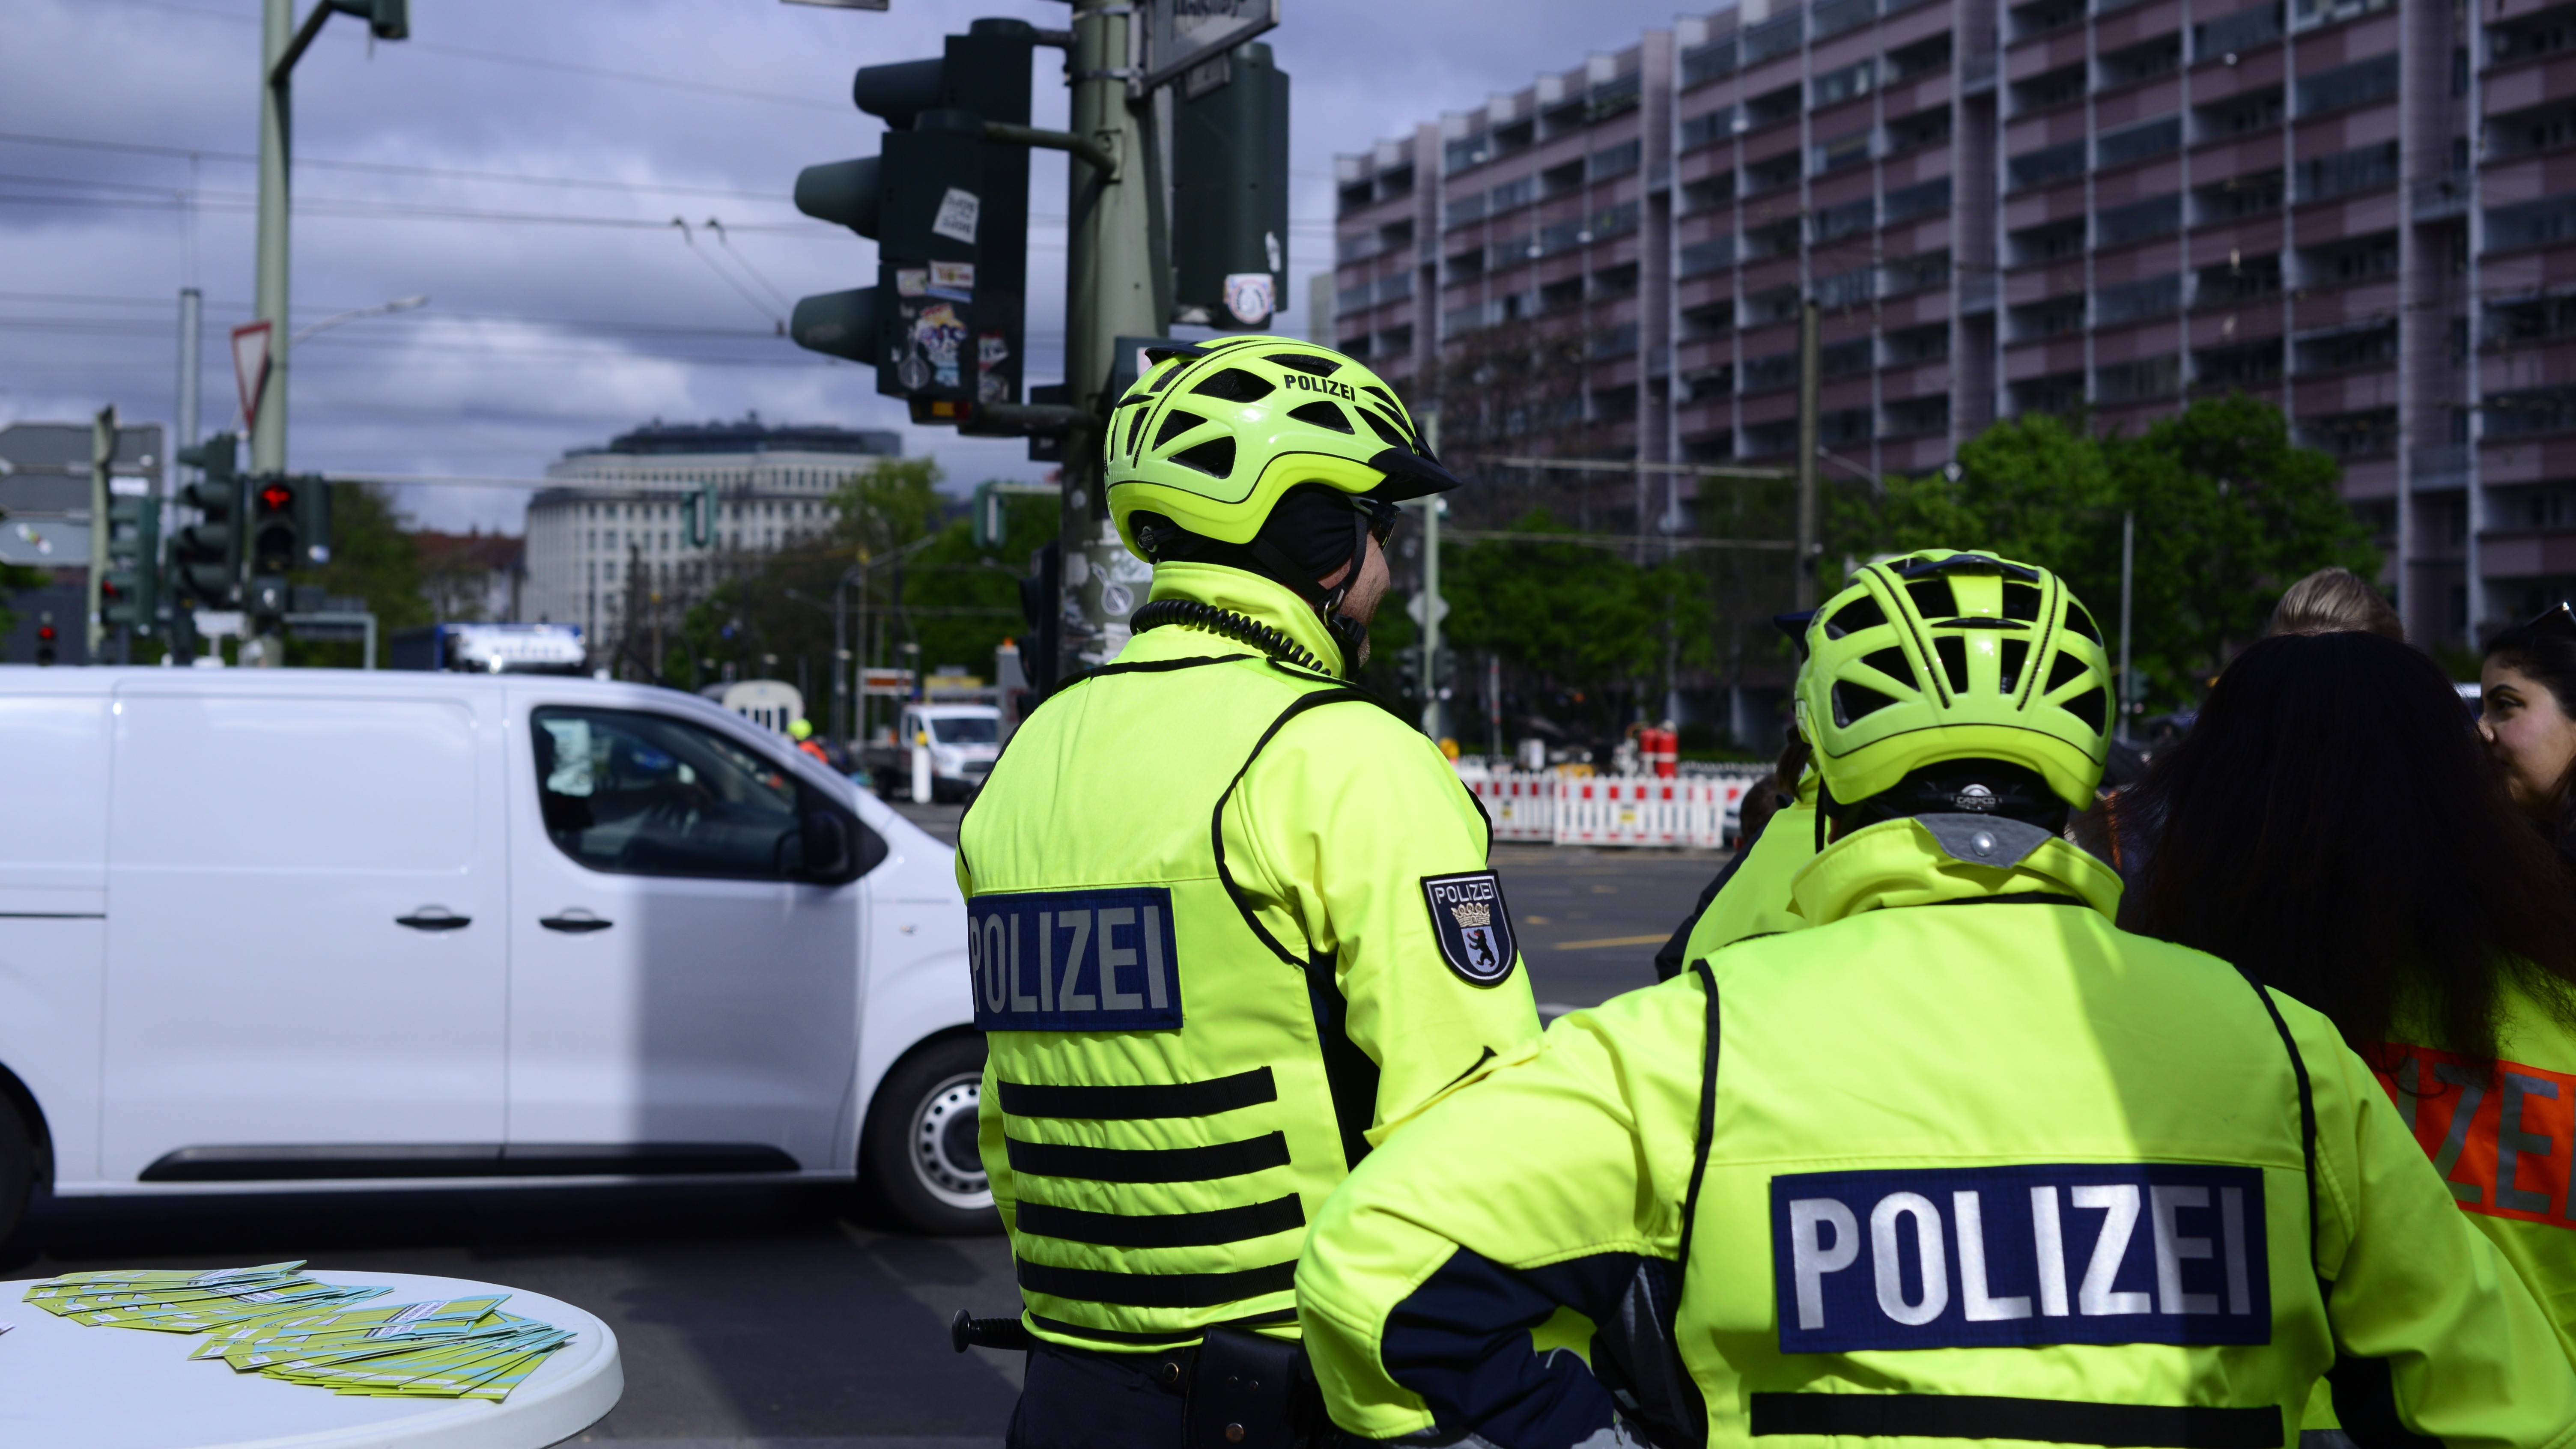 An einer Kreuzung in Berlin sind zwei Fahrradpolizisten von hinten zu sehen. Sie tragen neongelbe Uniformen und Fahrradhelme.